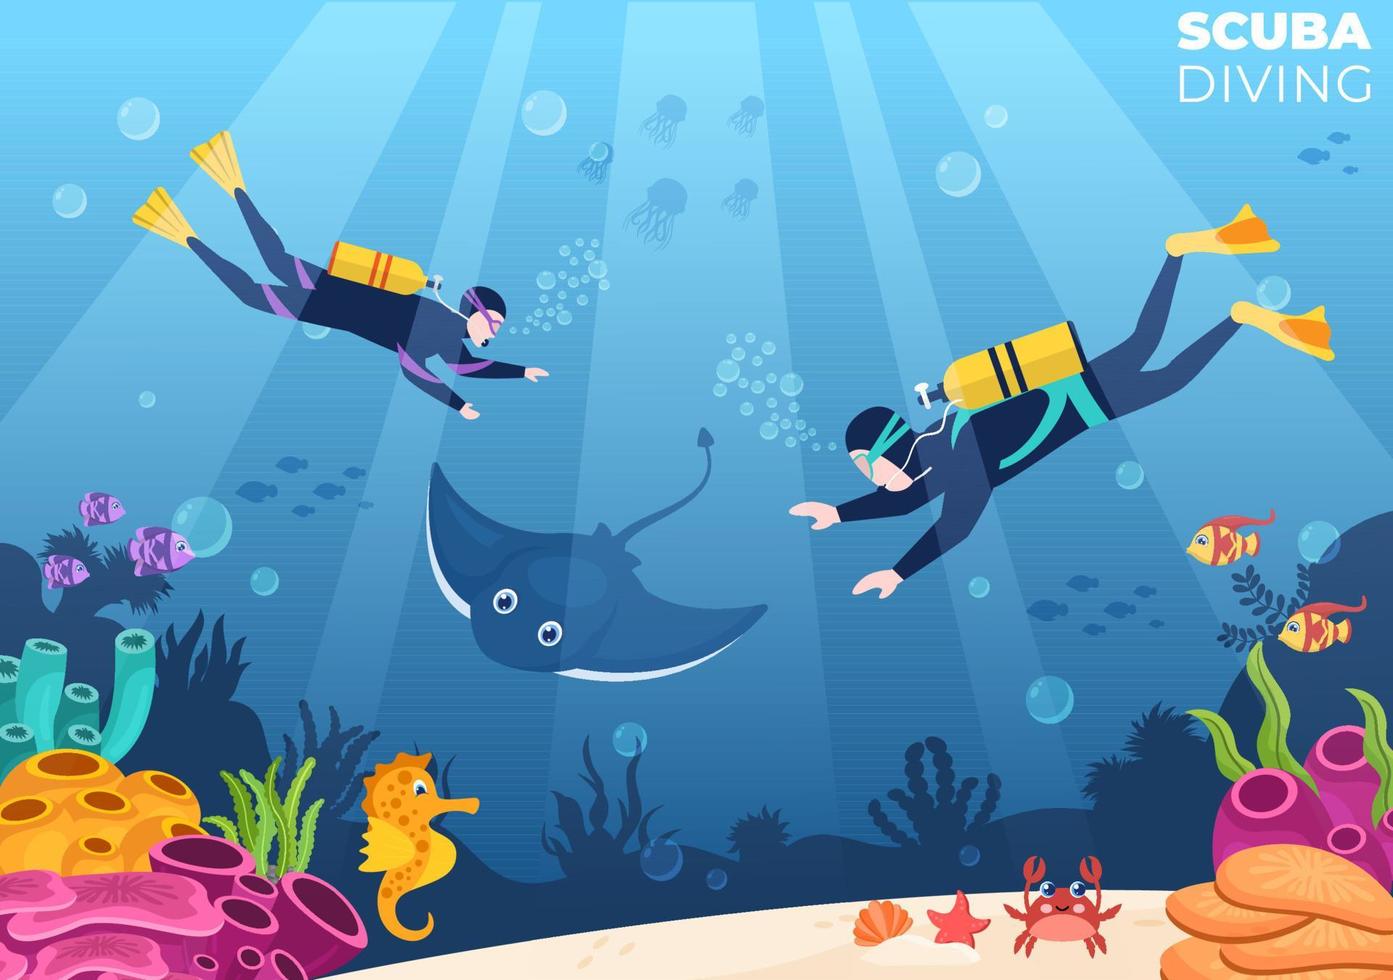 mergulho com equipamento de natação subaquática para explorar recifes de corais, flora e fauna marinha ou peixes no oceano em ilustração vetorial de desenho animado plano vetor